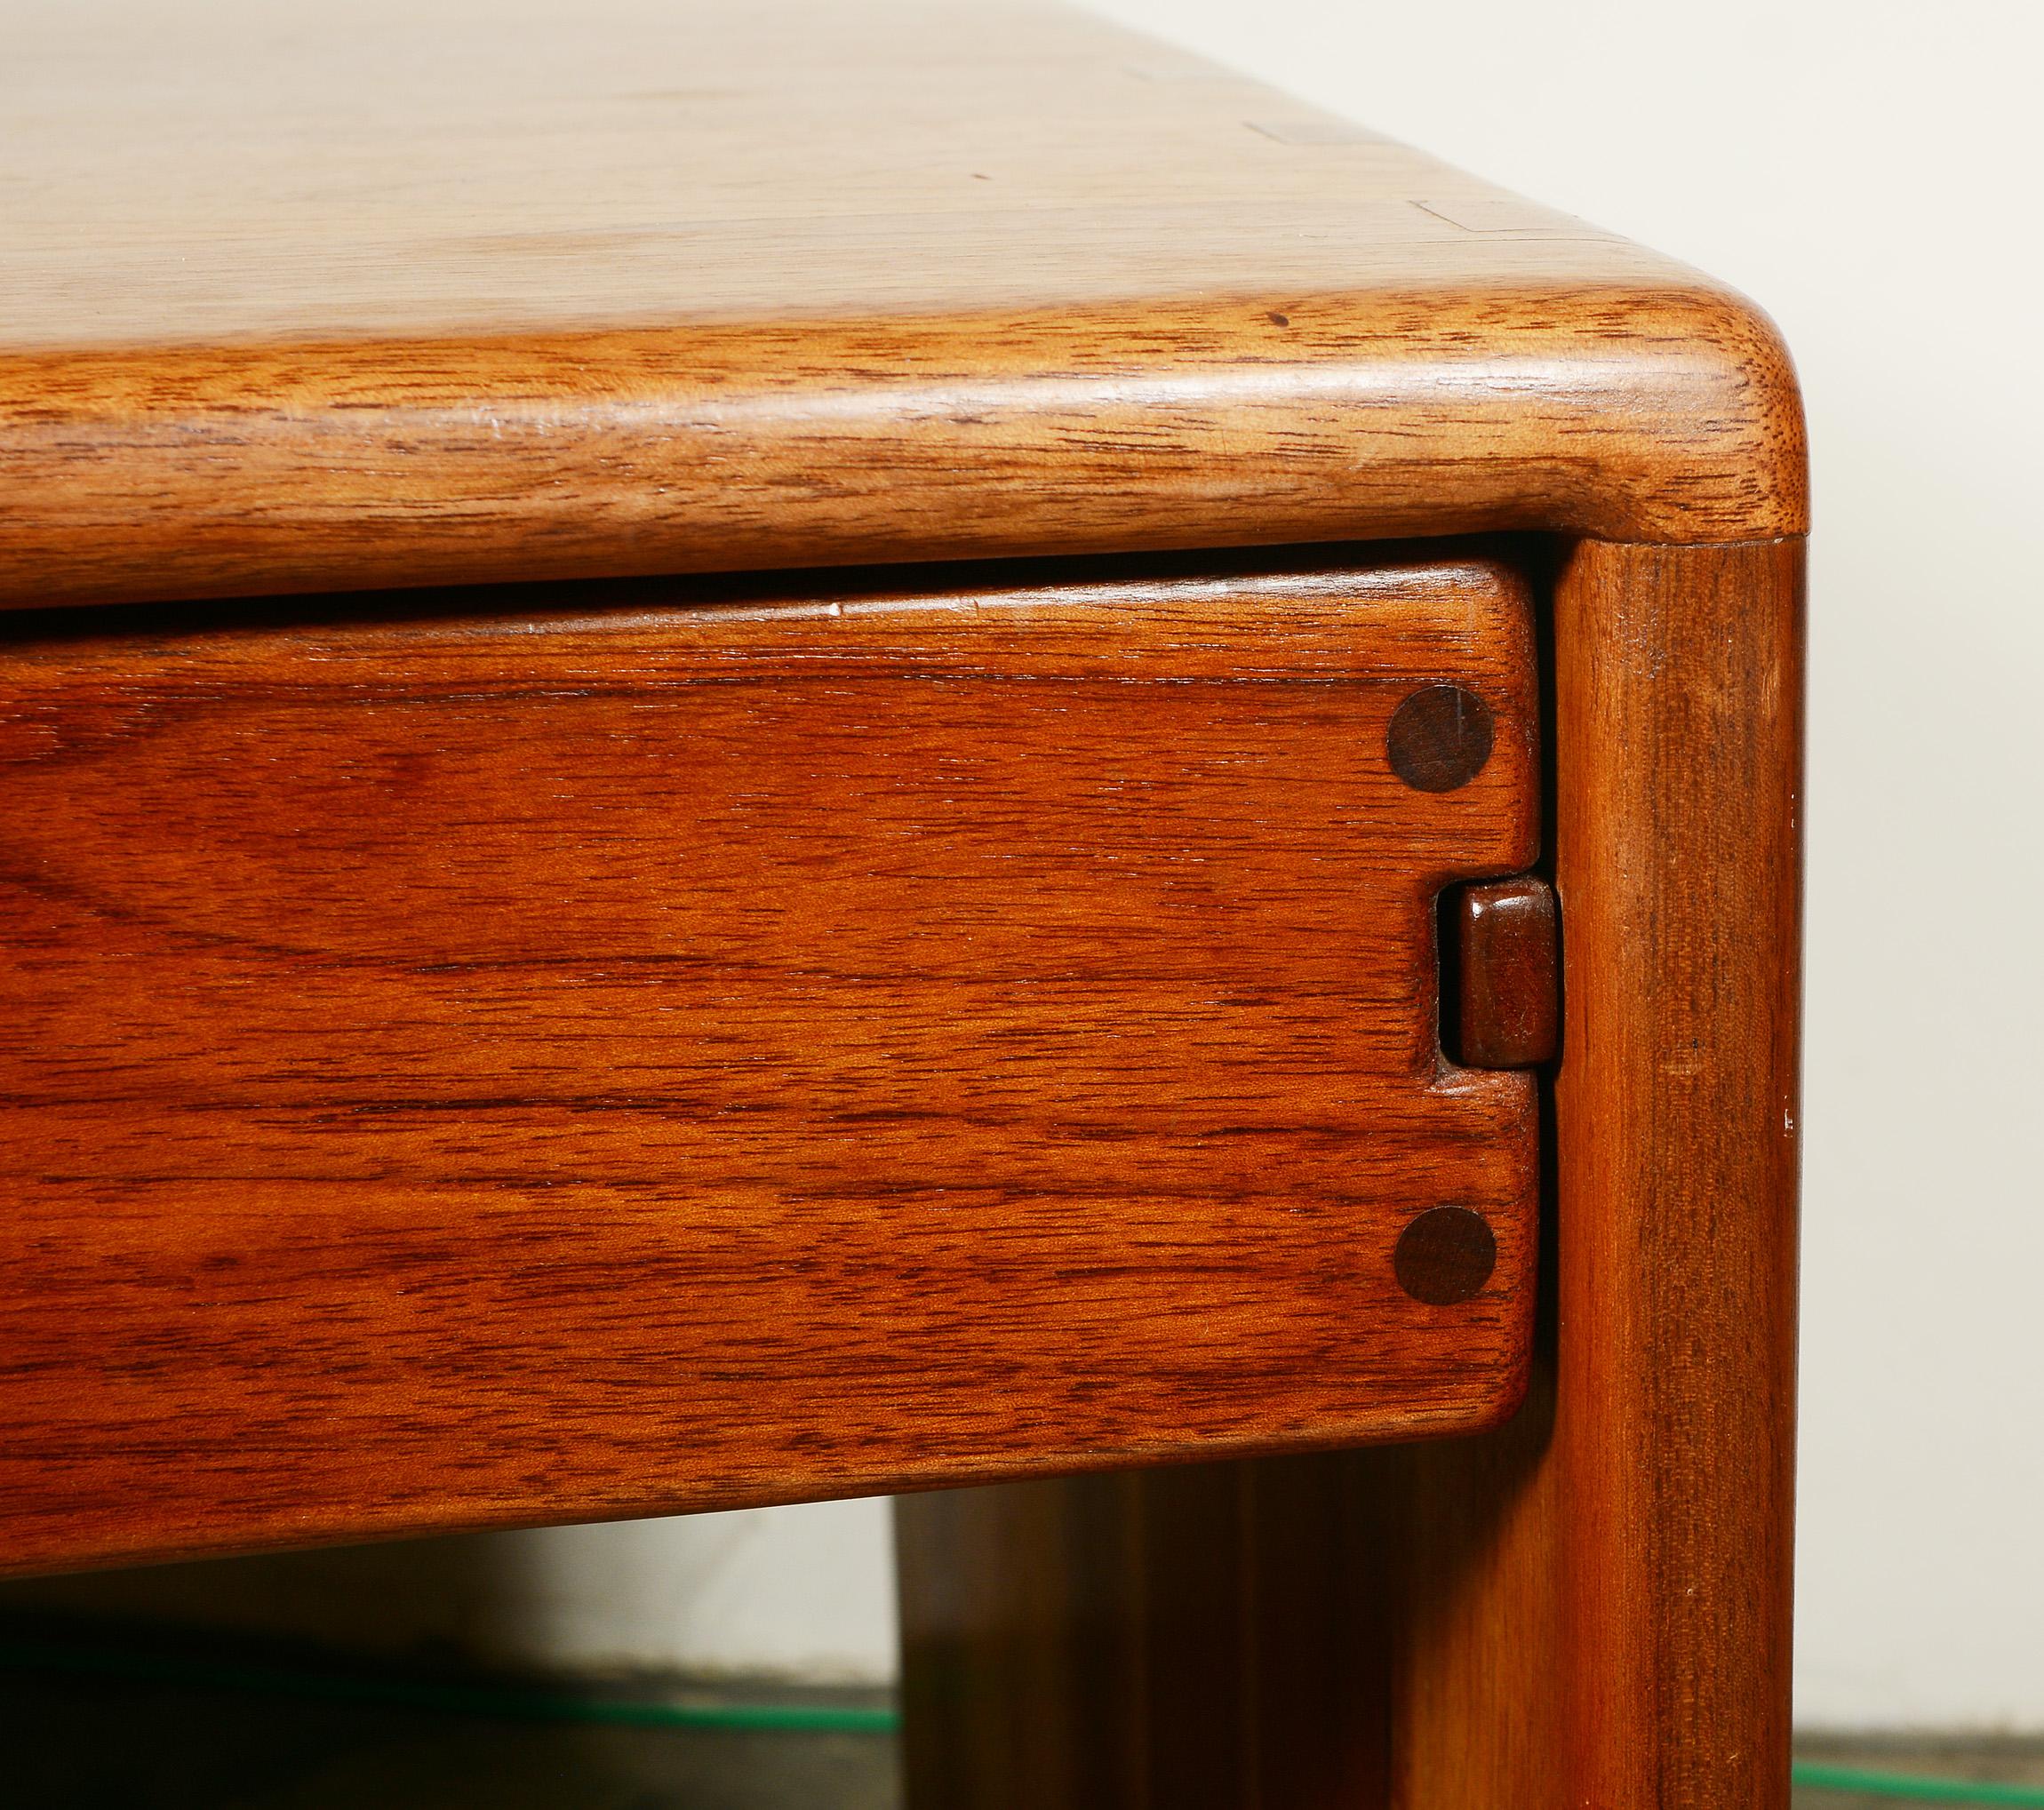 Arthur Espenet Carpenter Walnut Table with Drawer For Sale 3